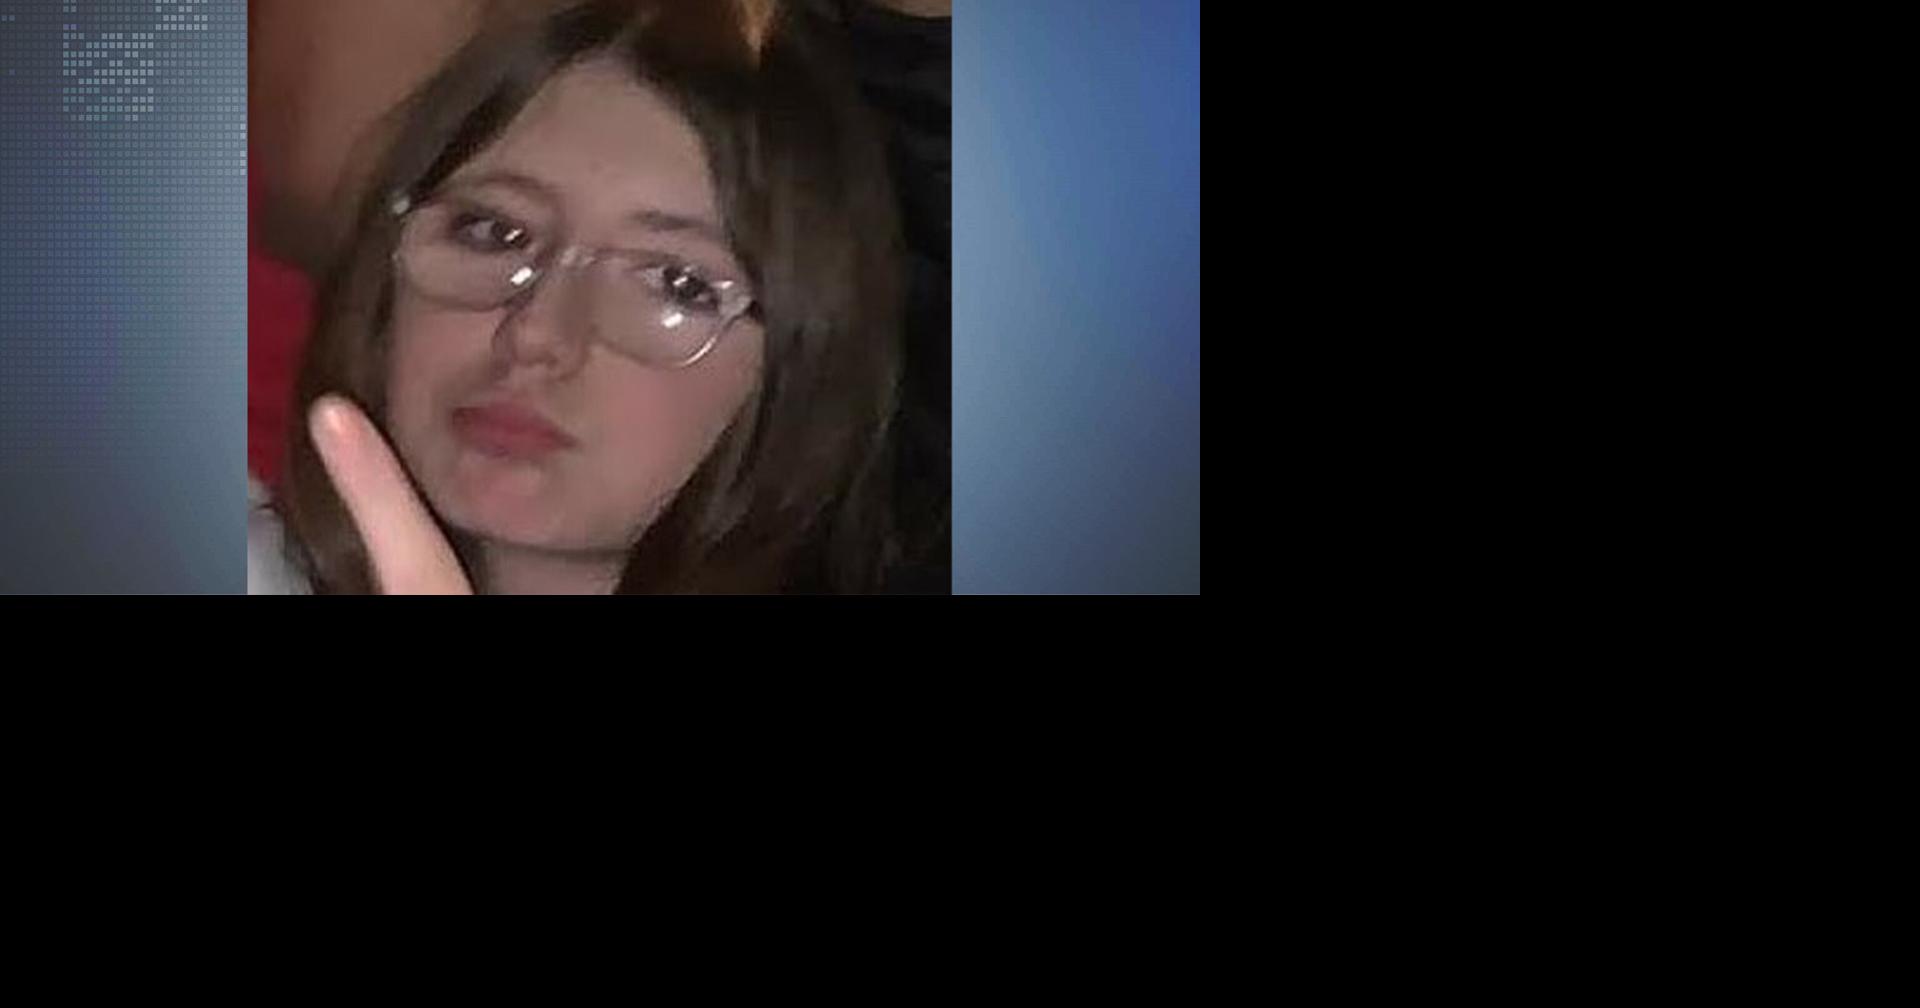 UPDATE: Missing 14-year-old Bristol Wieland found